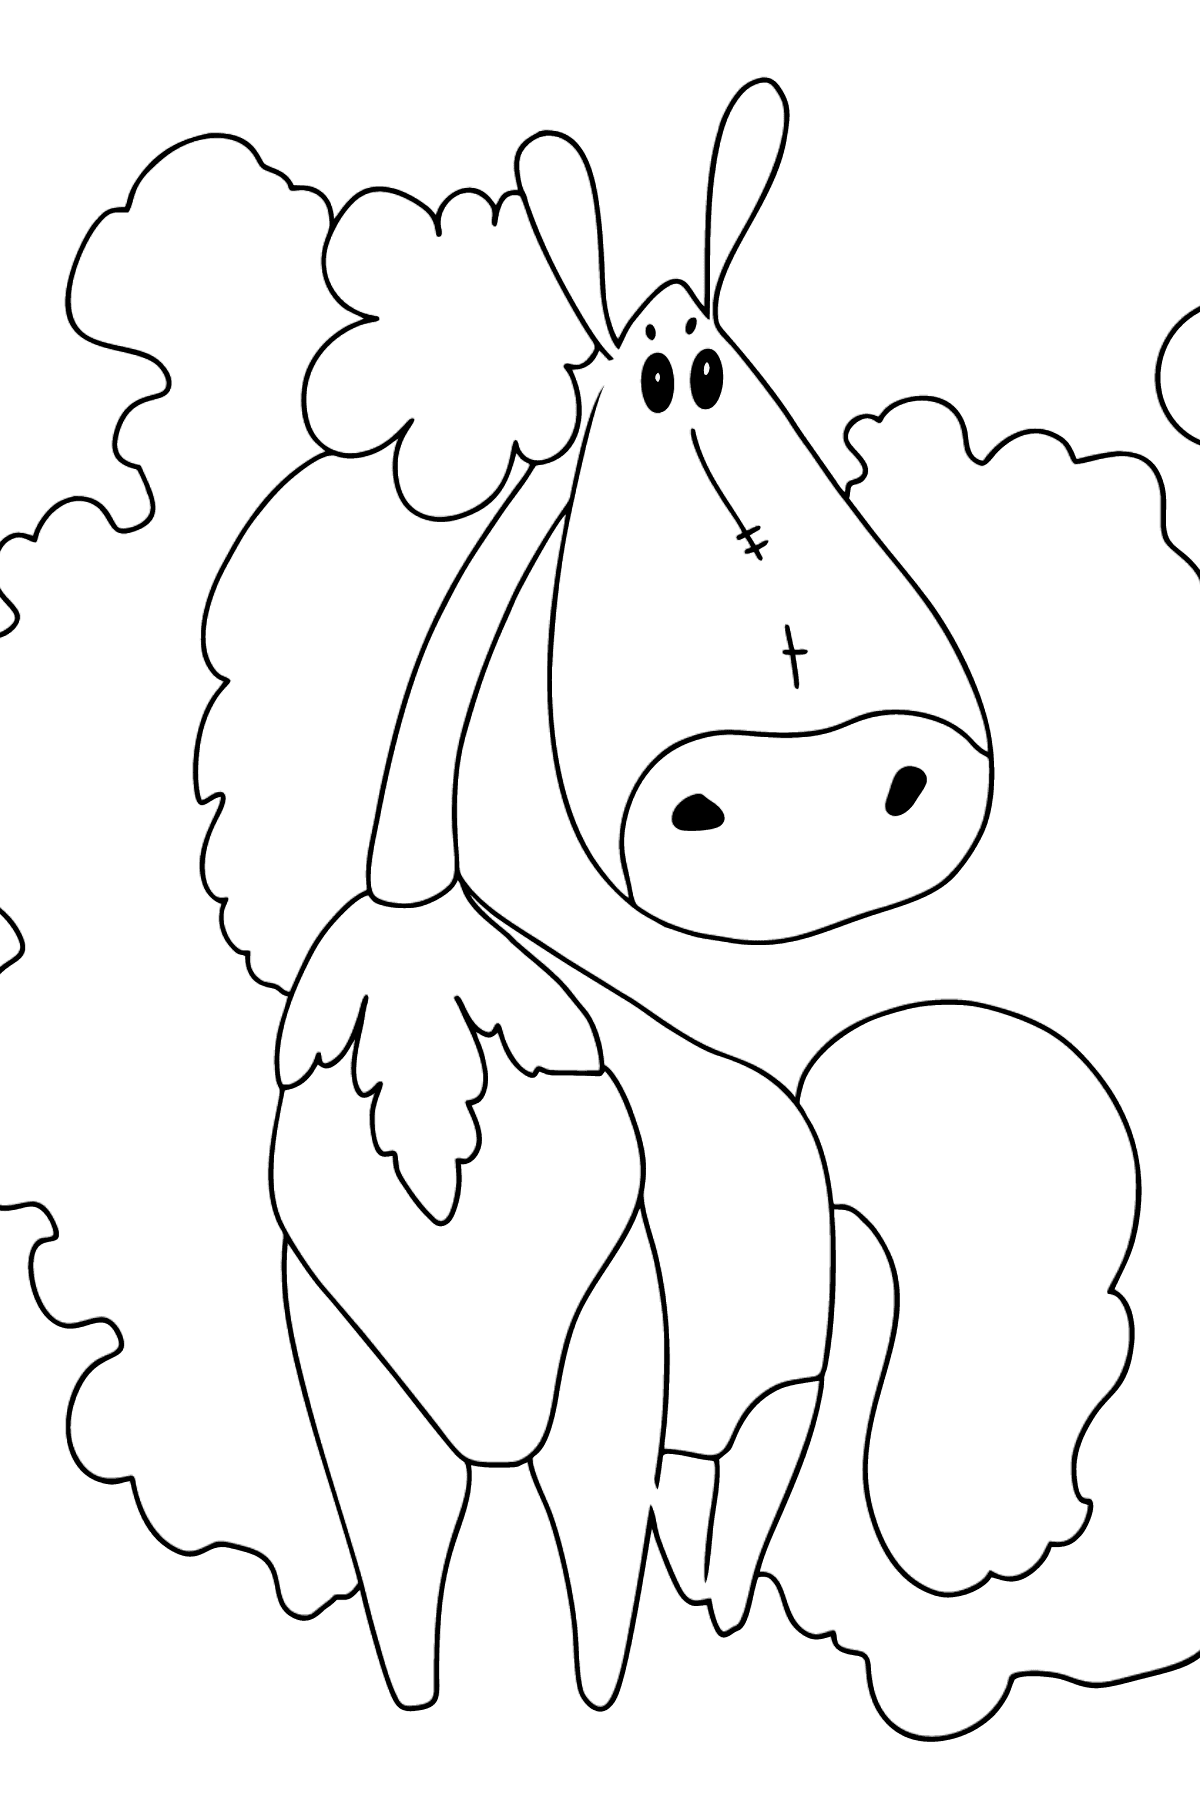 Desenho de cavalo fashionista para colorir fácil - Imagens para Colorir para Crianças